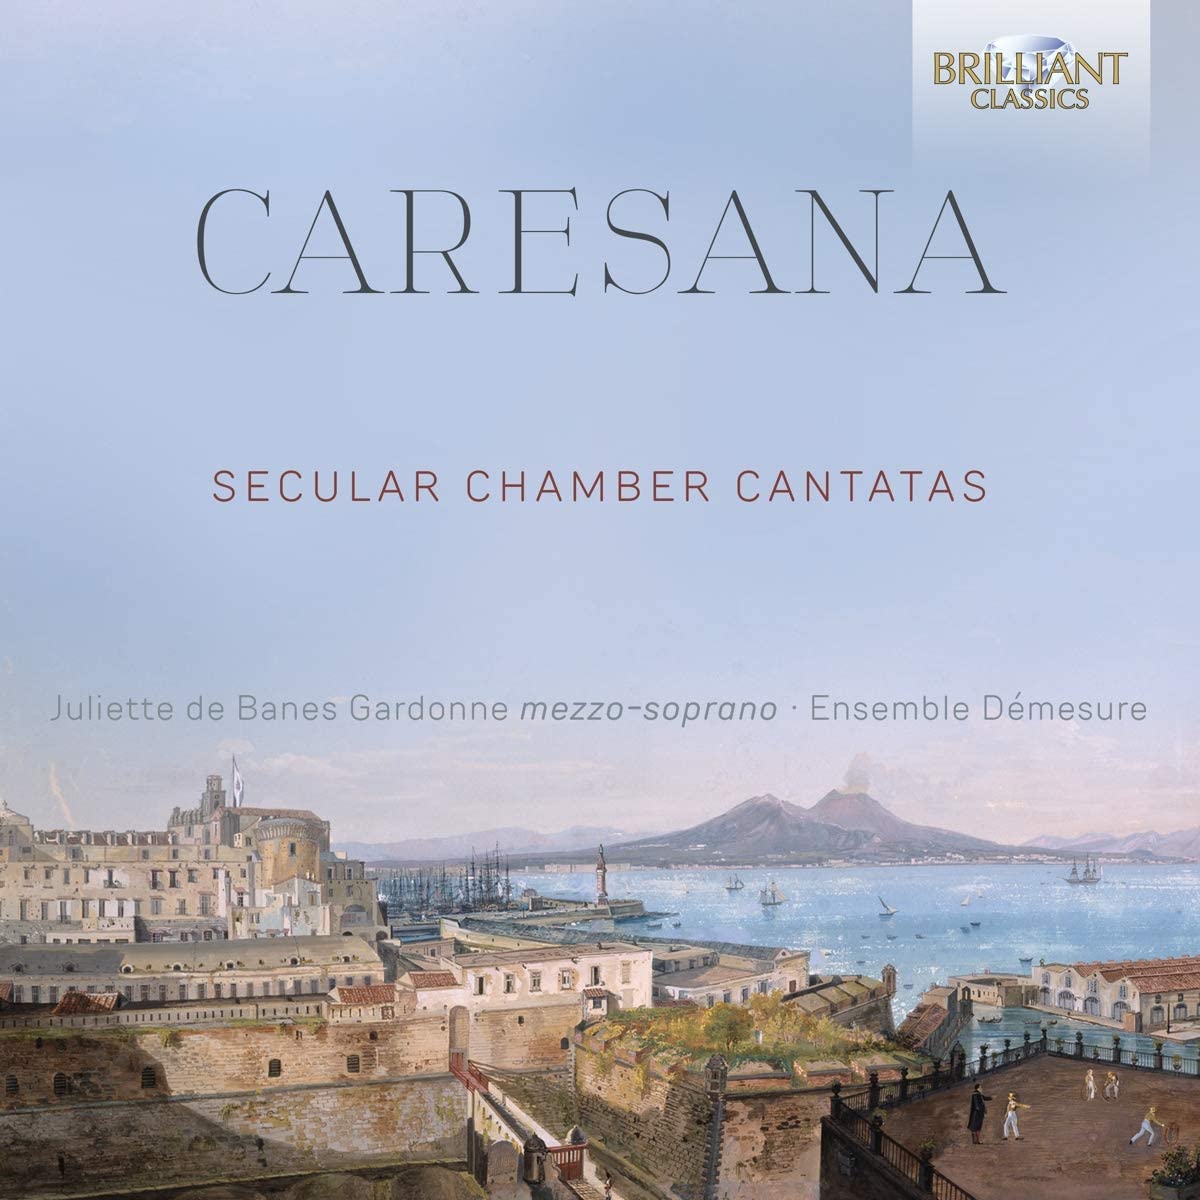 Caresana secular cantatas CD cover Brilliant Classics